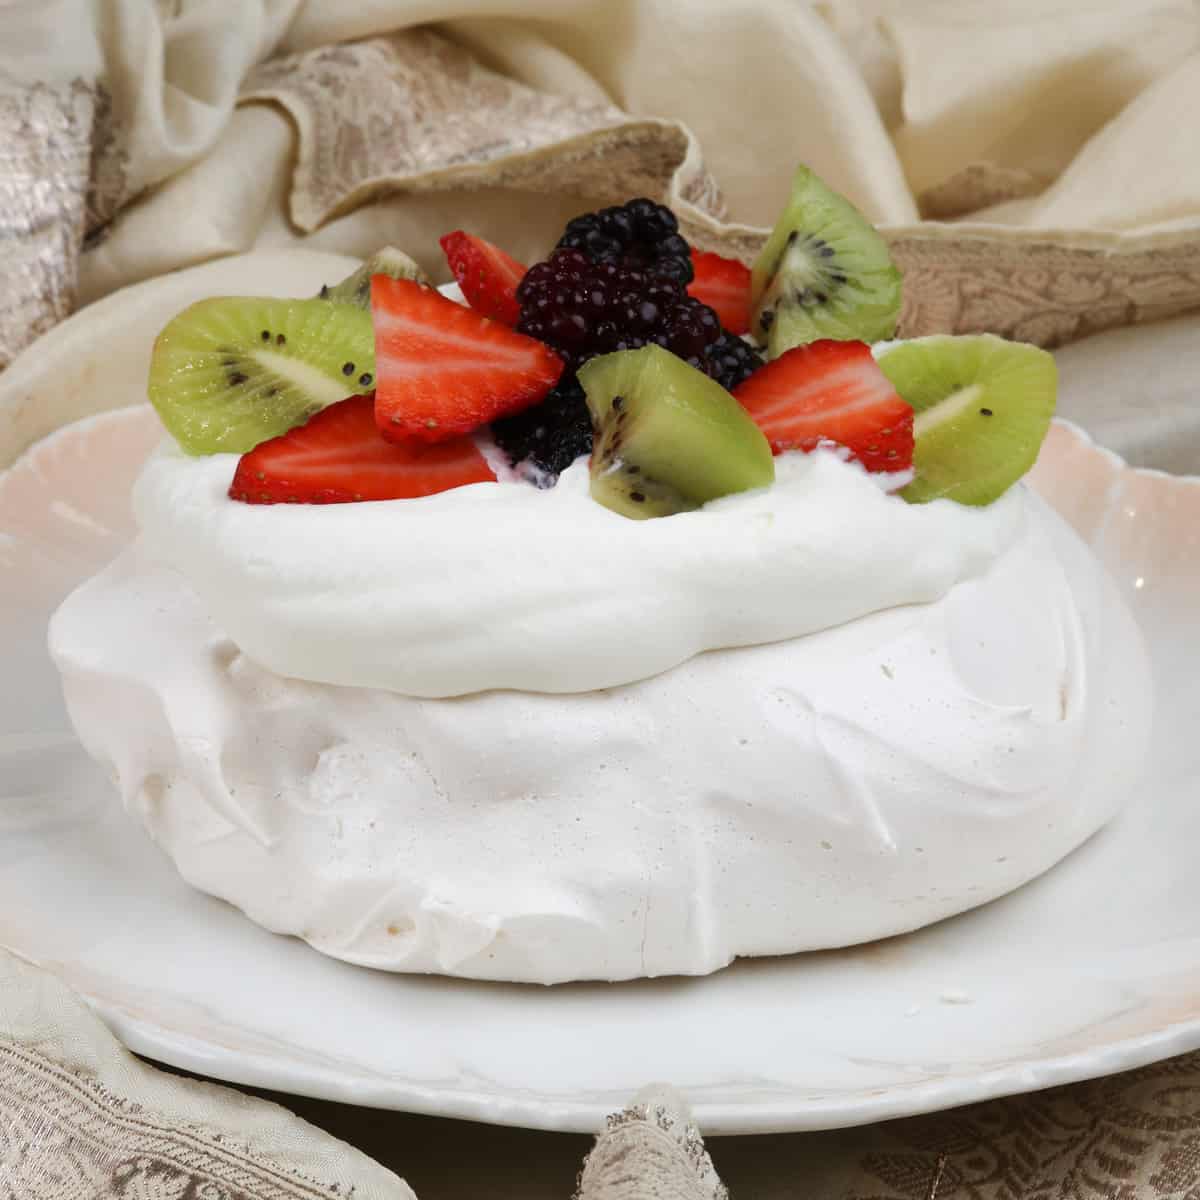 a mini pavlova topped with fresh fruit on a white plate next to a cream napkin.